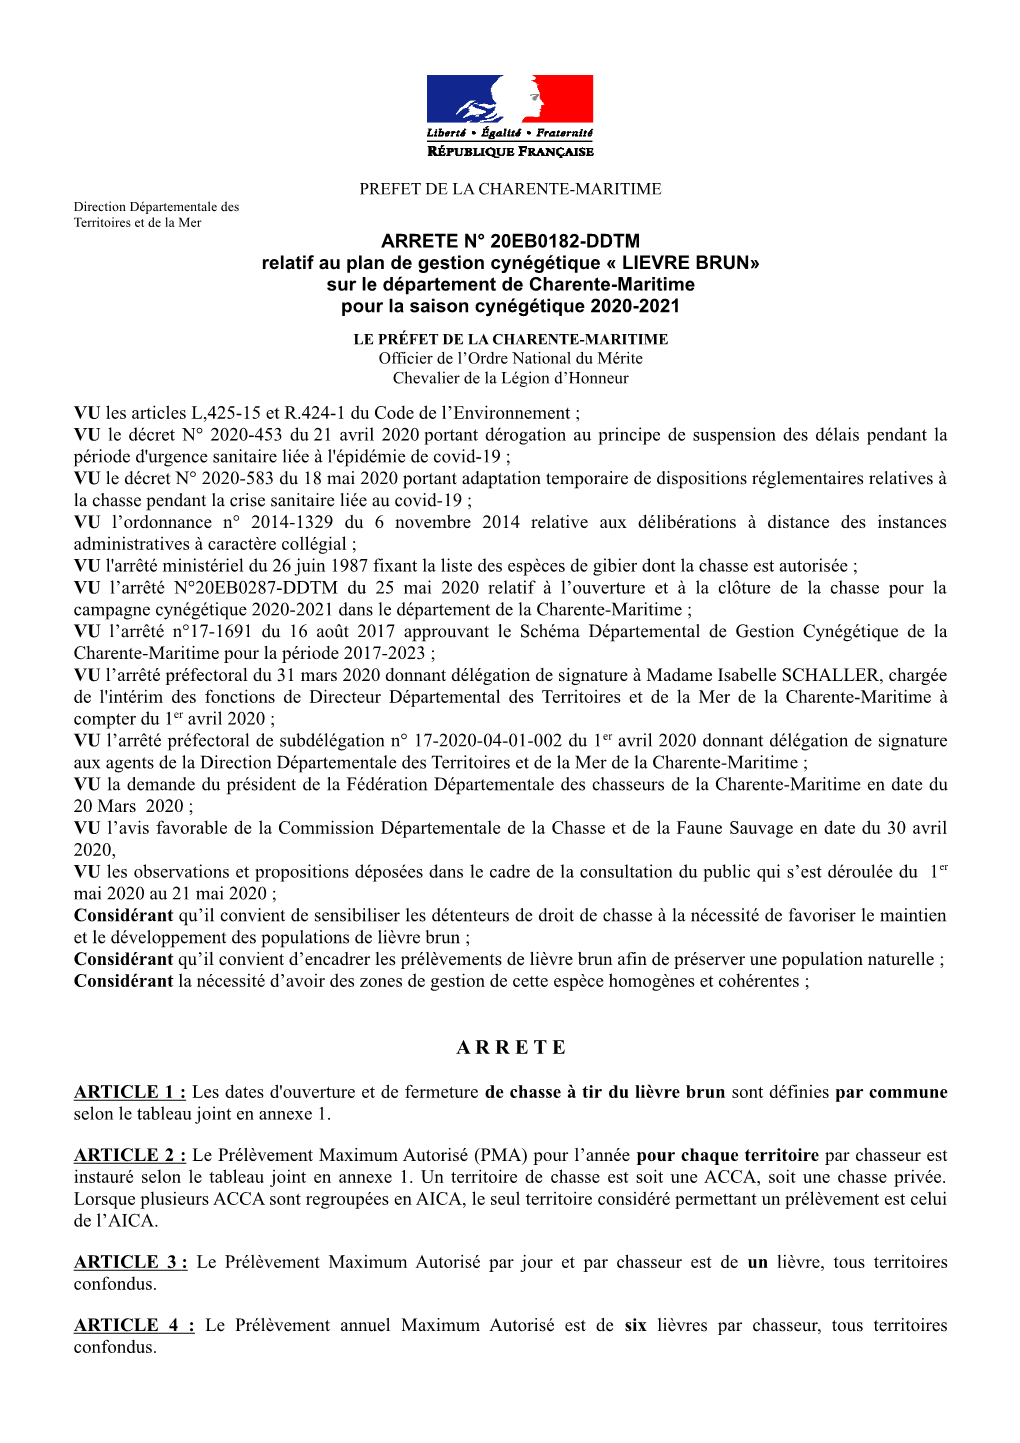 ARRETE N° 20EB0182-DDTM Relatif Au Plan De Gestion Cynégétique « LIEVRE BRUN» Sur Le Département De Charente-Maritime Pour La Saison Cynégétique 2020-2021